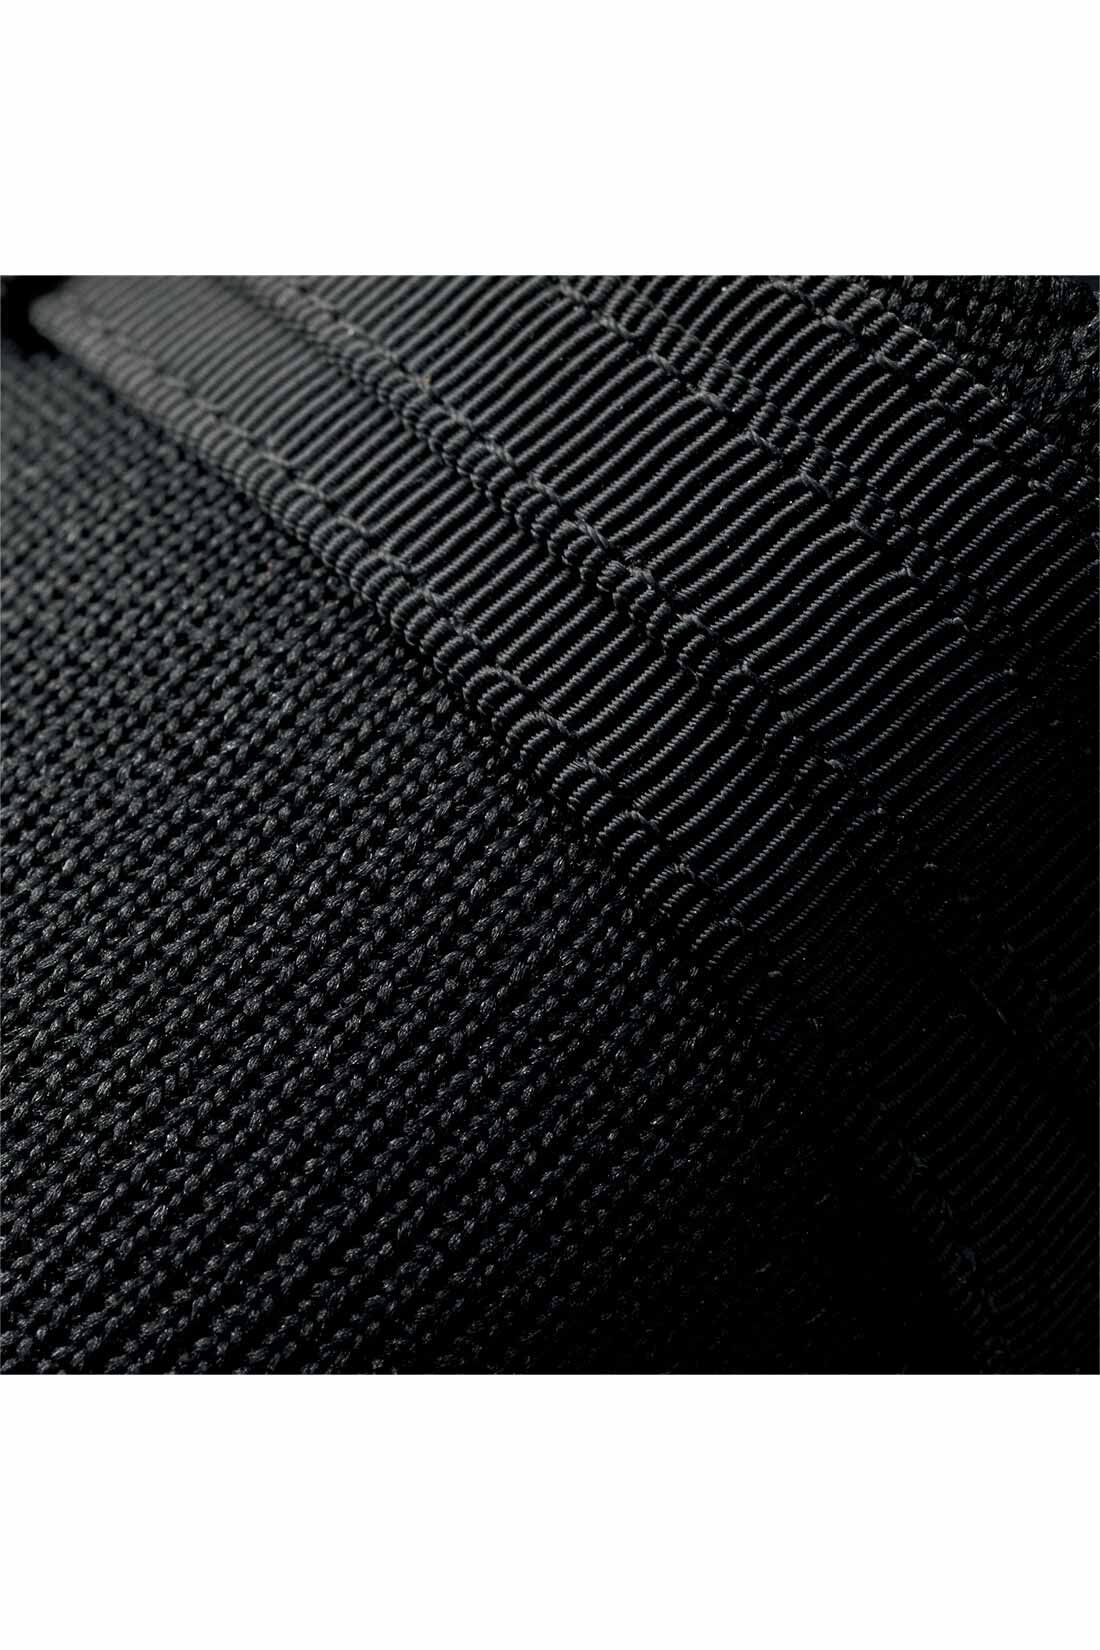 ファッションスペシャル|【3～10日でお届け】IEDIT[イディット]ふかふかインソールで快適な上品ニットパンプス〈ブラック〉|弔事にも使いやすい、光沢のないマットな黒のニット素材が伸びやかな履き心地。